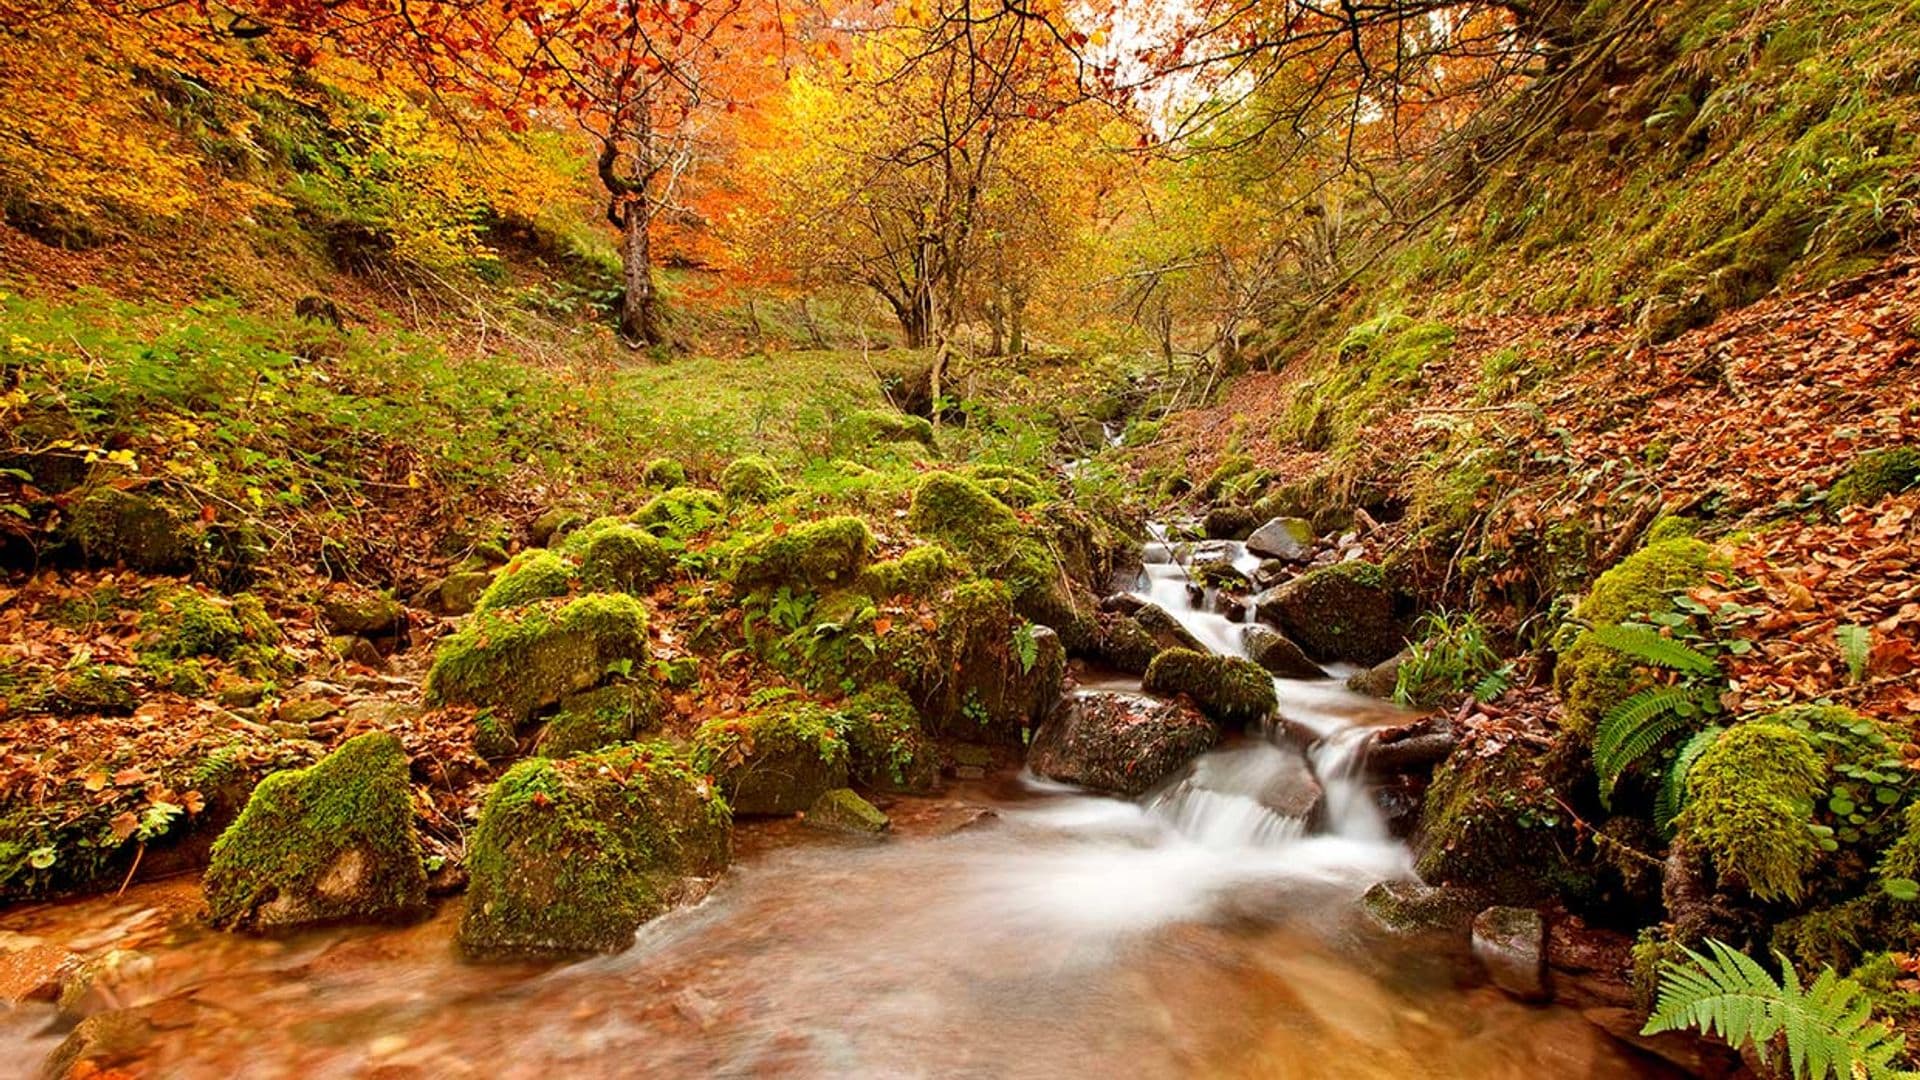 Paisajes de Cantabria para enloquecer este otoño